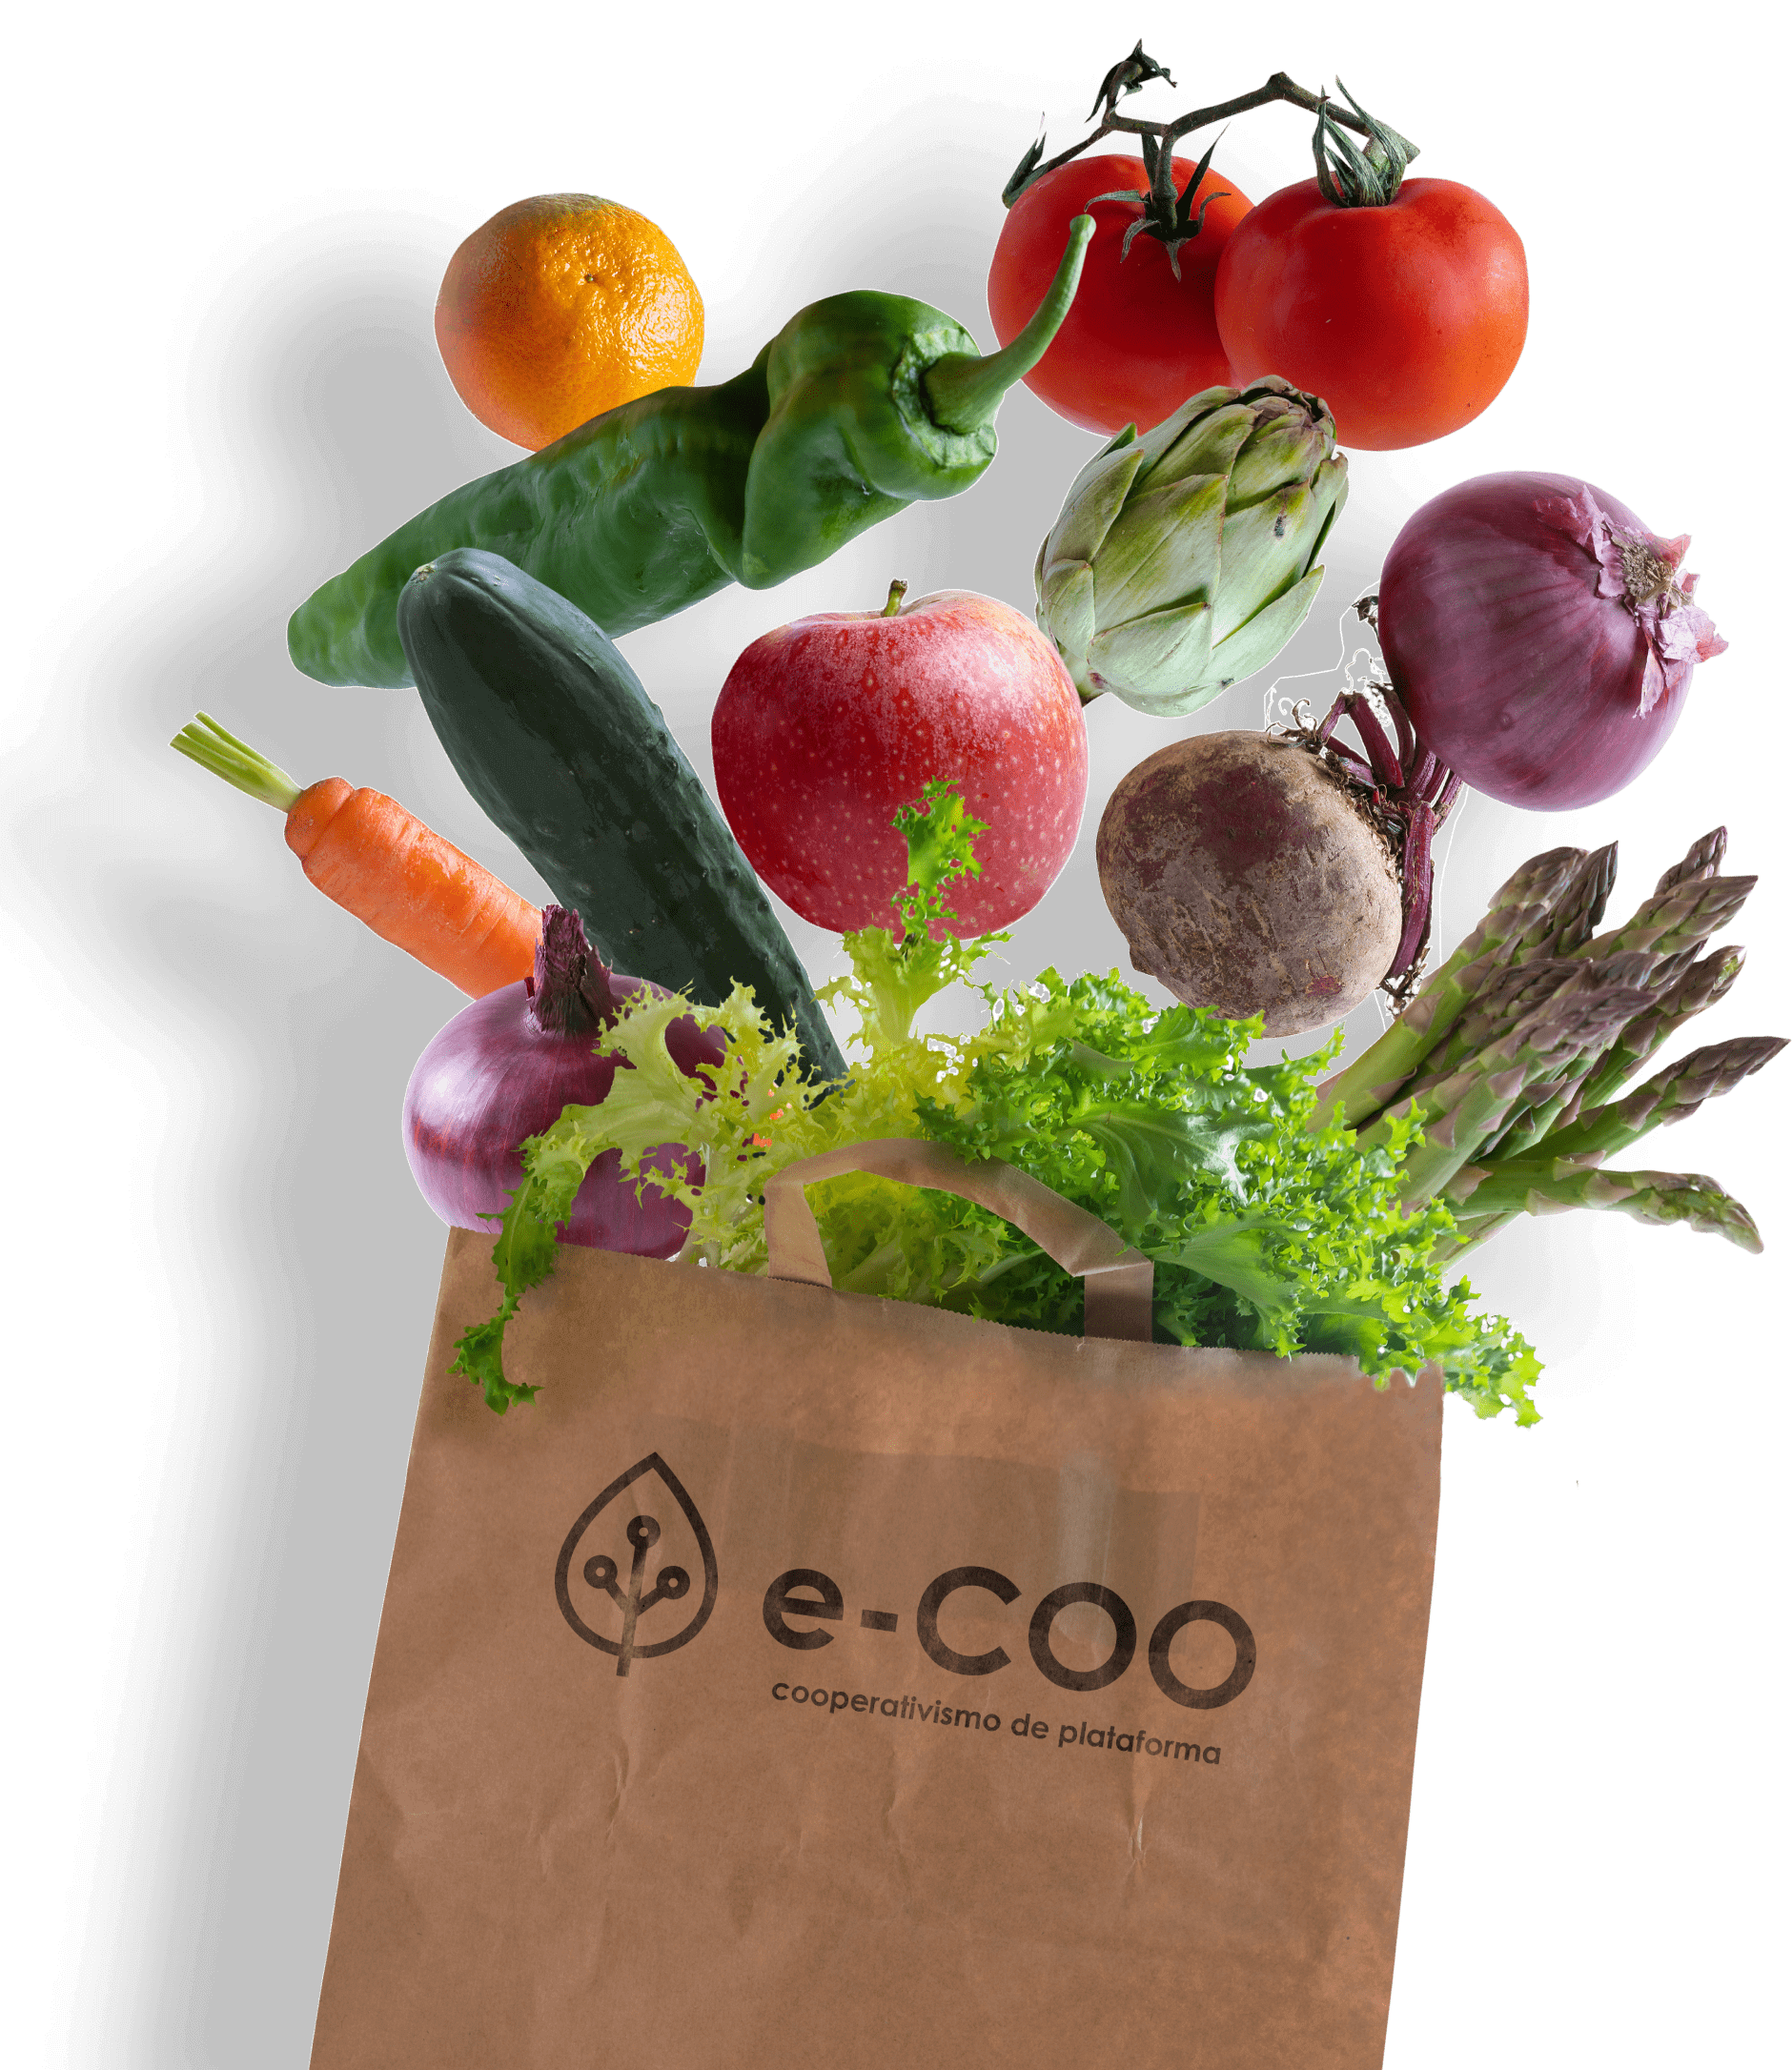 Sacola de papel com logotipo e-COO transbordando com vegetais frescos e orgânicos como tomates, laranjas, cenouras e aspargos